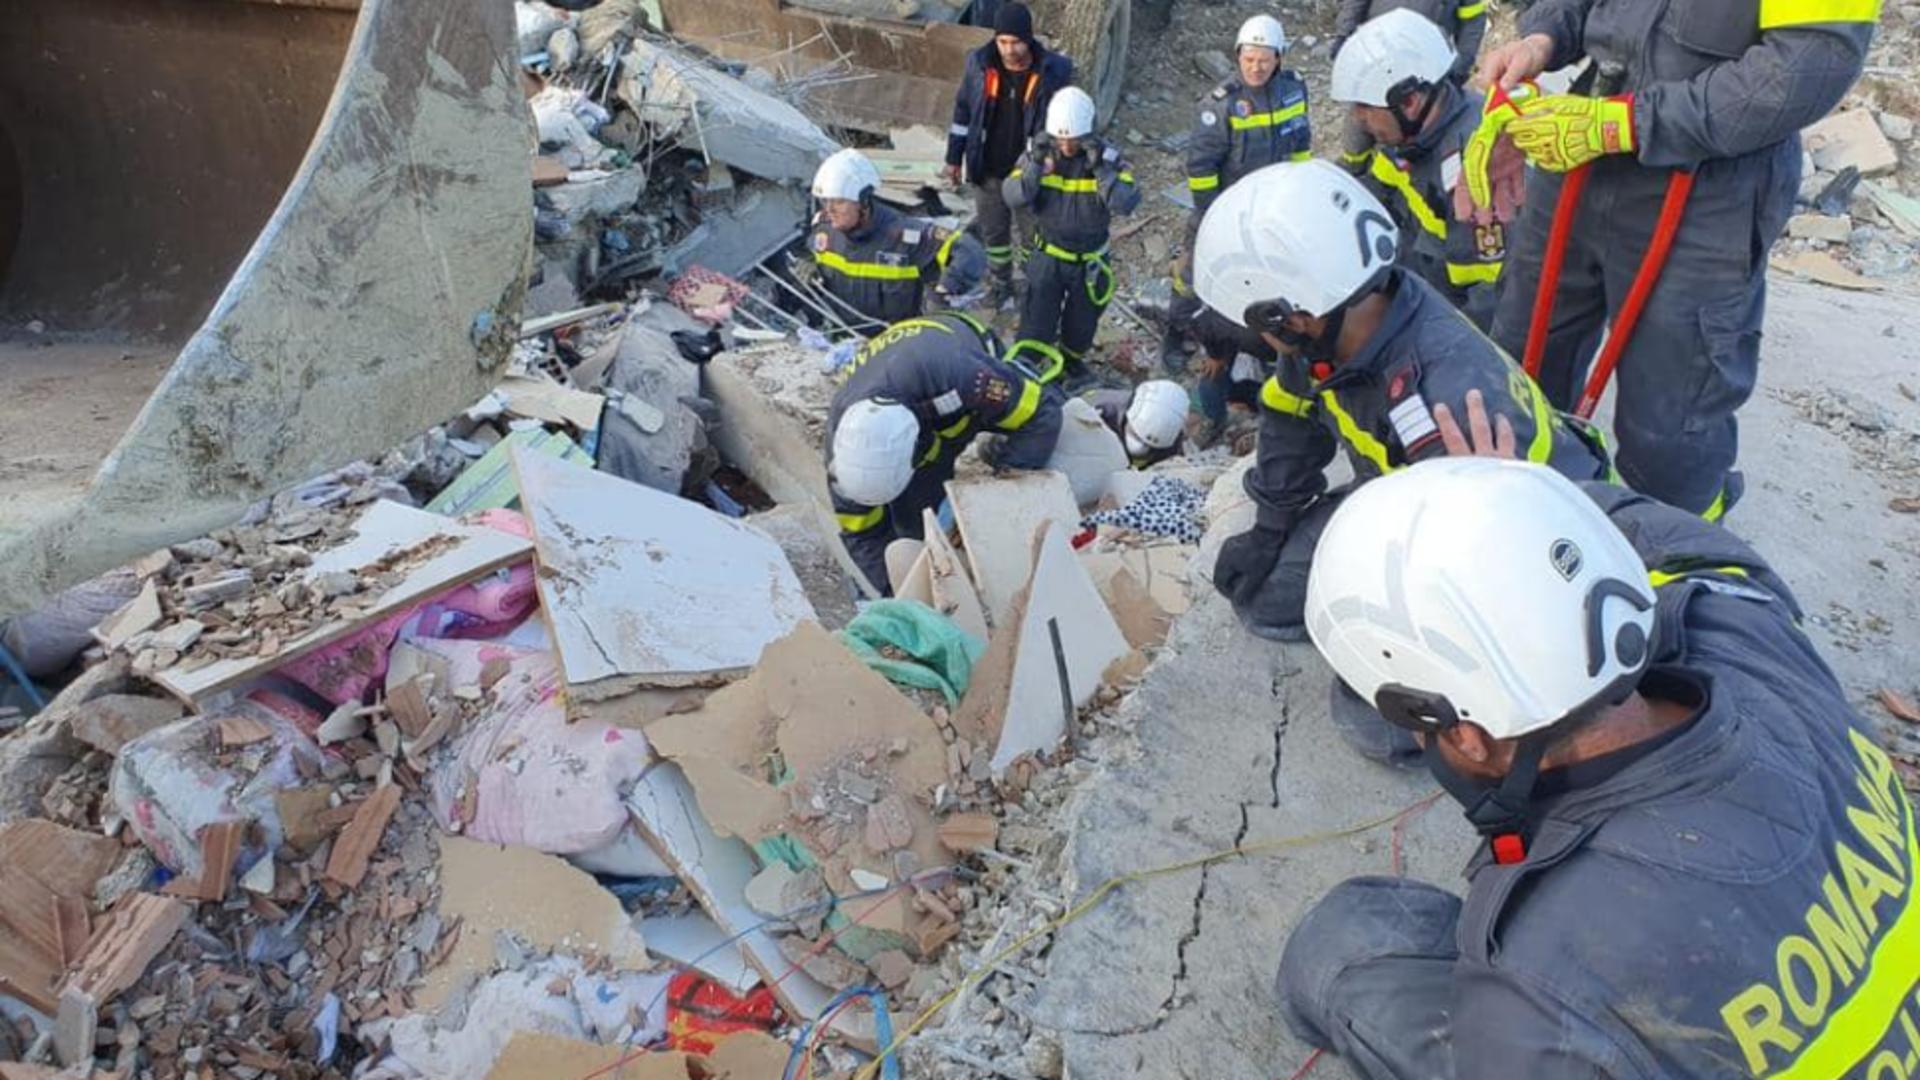 Imagini din timpul misiunii de căutare-salvare a echipei de sprijin din România - Două persoane au fost salvate